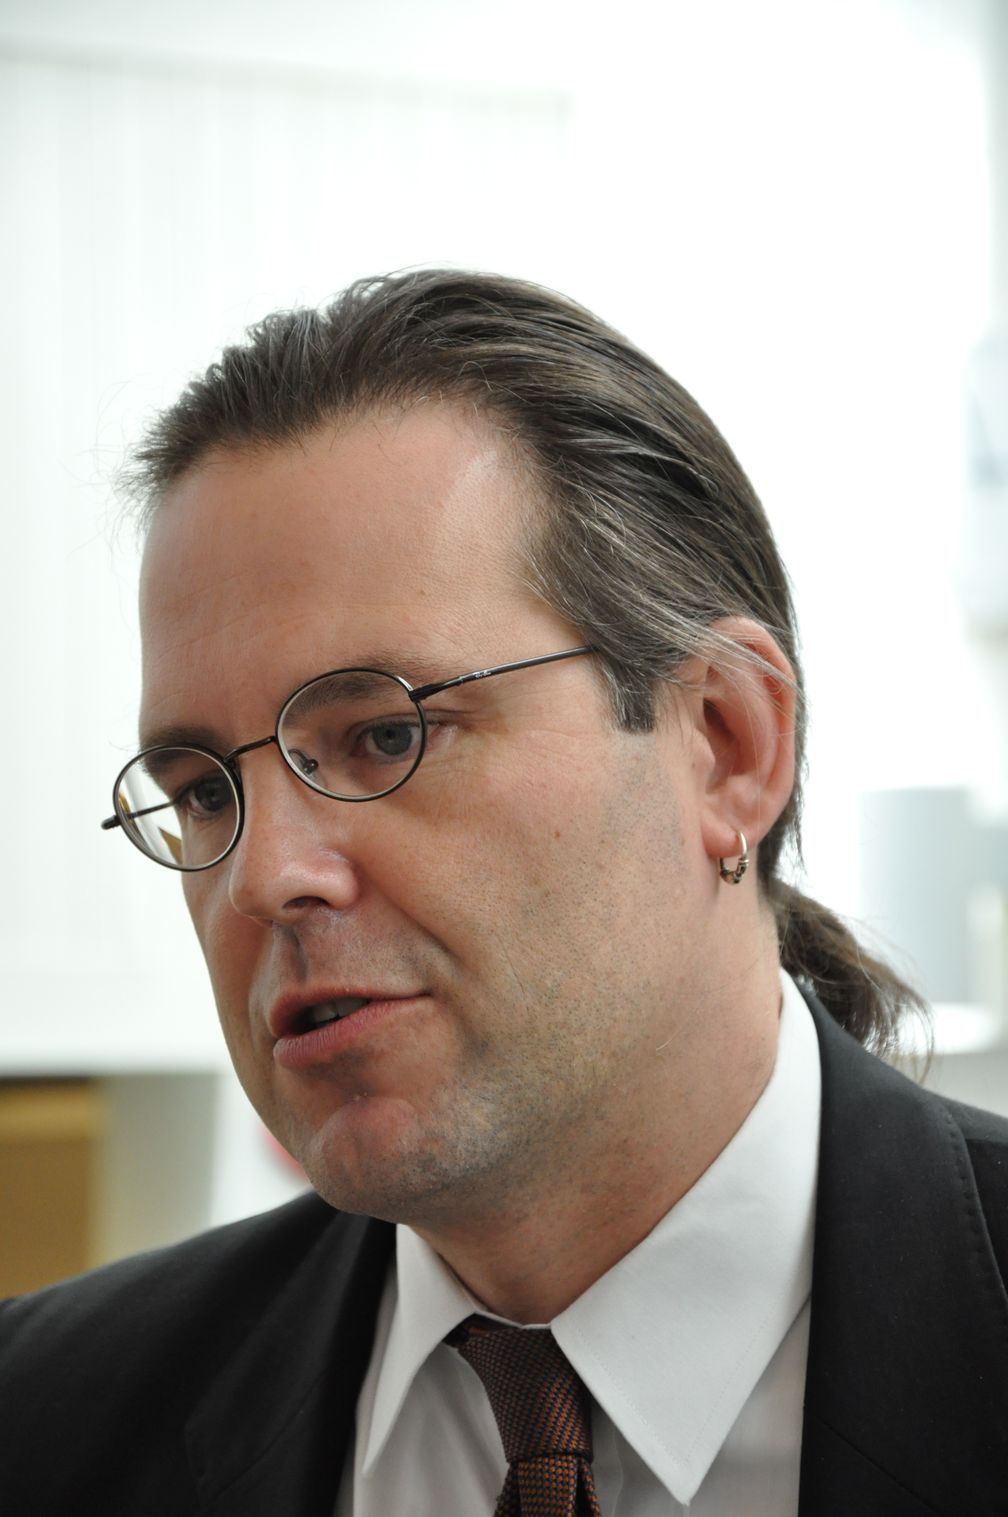 Anders Borg bei einer Pressekonferenz des Finanzministeriums 2010 in Stockholm.